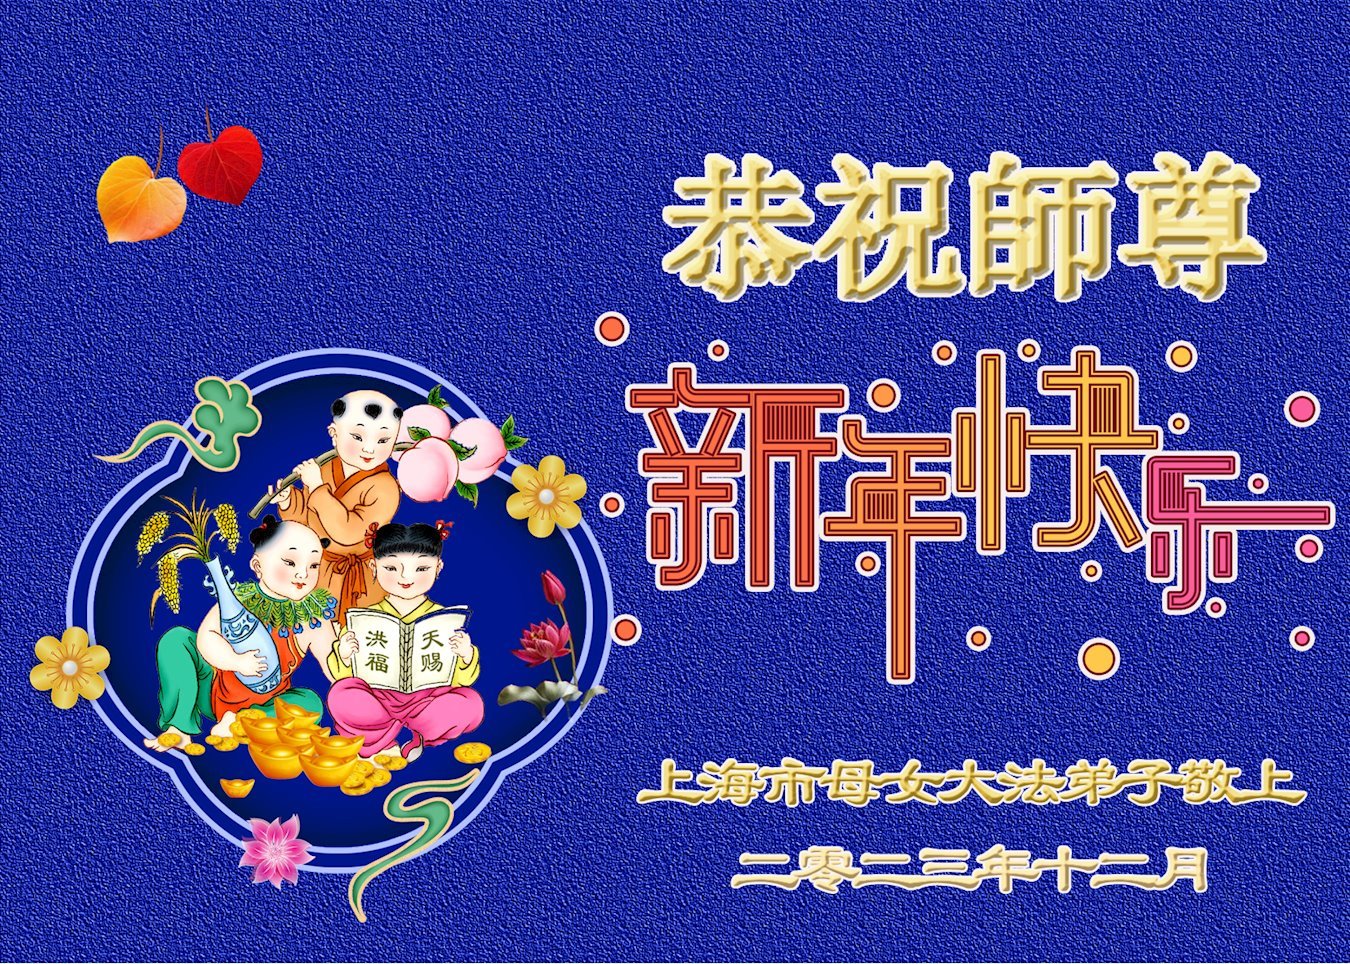 Image for article Les pratiquants de Falun Dafa de Shanghai souhaitent respectueusement au vénérable Maître Li Hongzhi une Bonne et Heureuse Année ! (20 vœux)